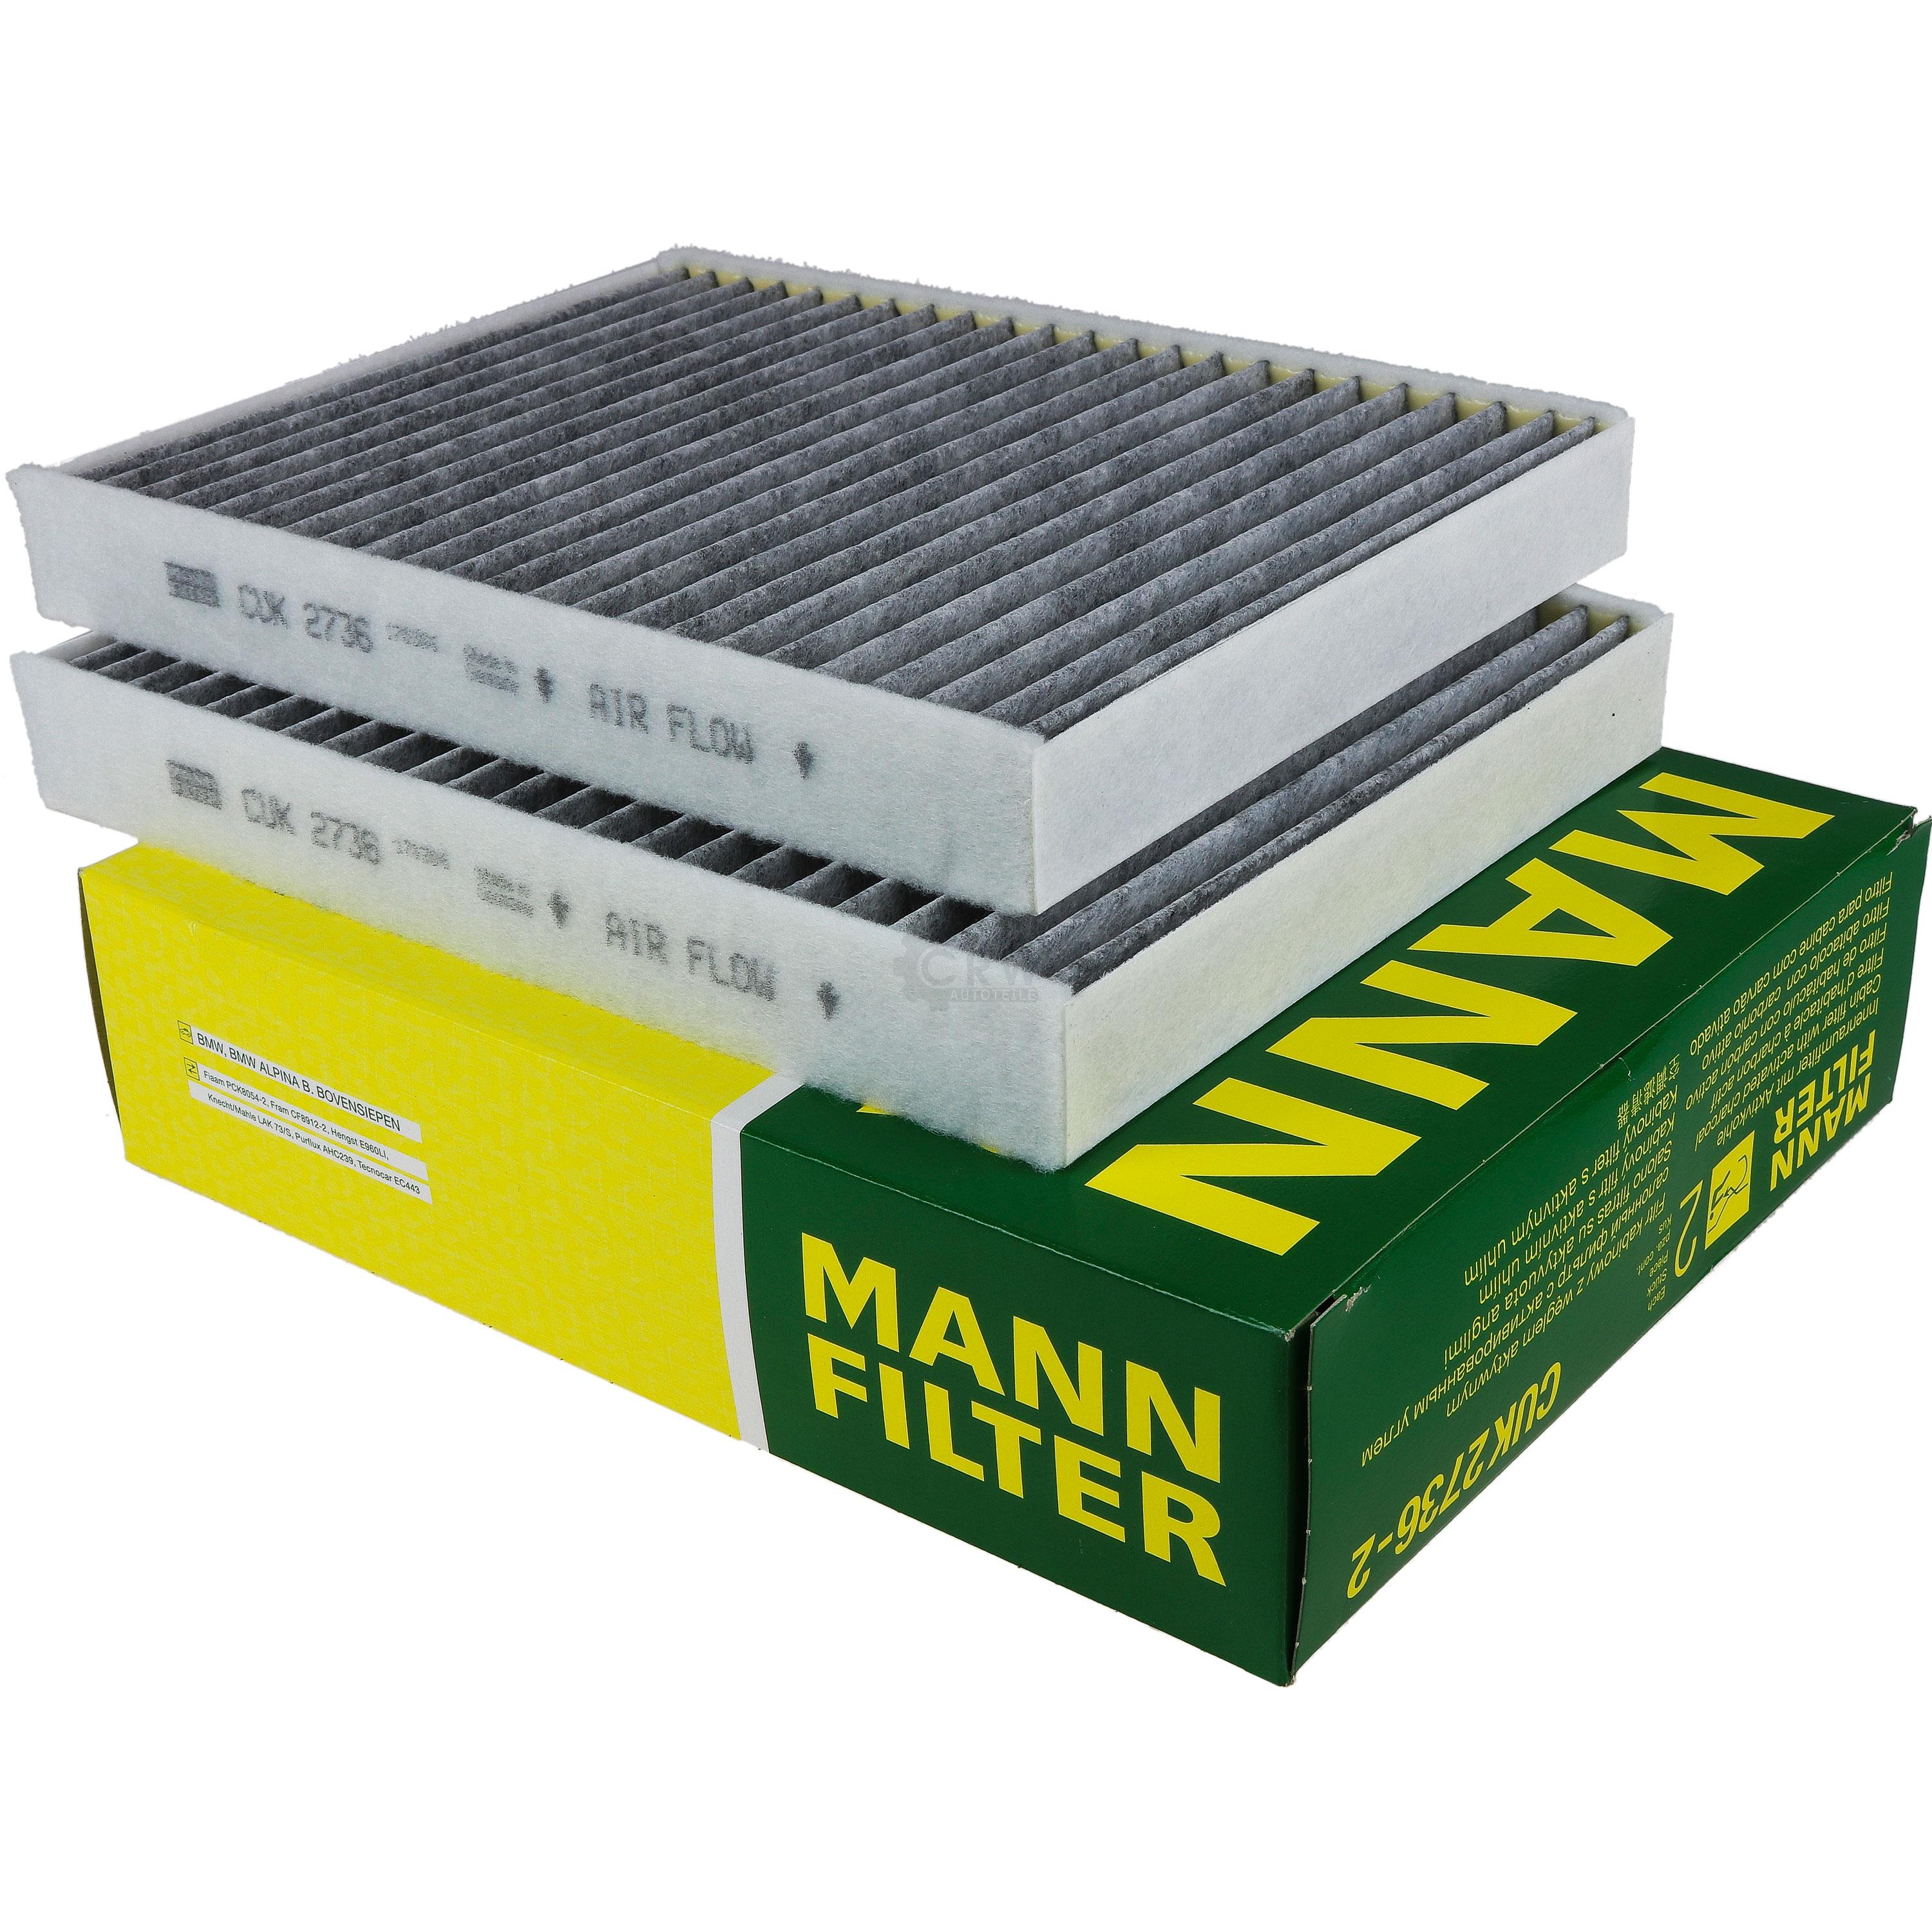 MANN-FILTER Innenraumfilter Pollenfilter Aktivkohle CUK 2736-2